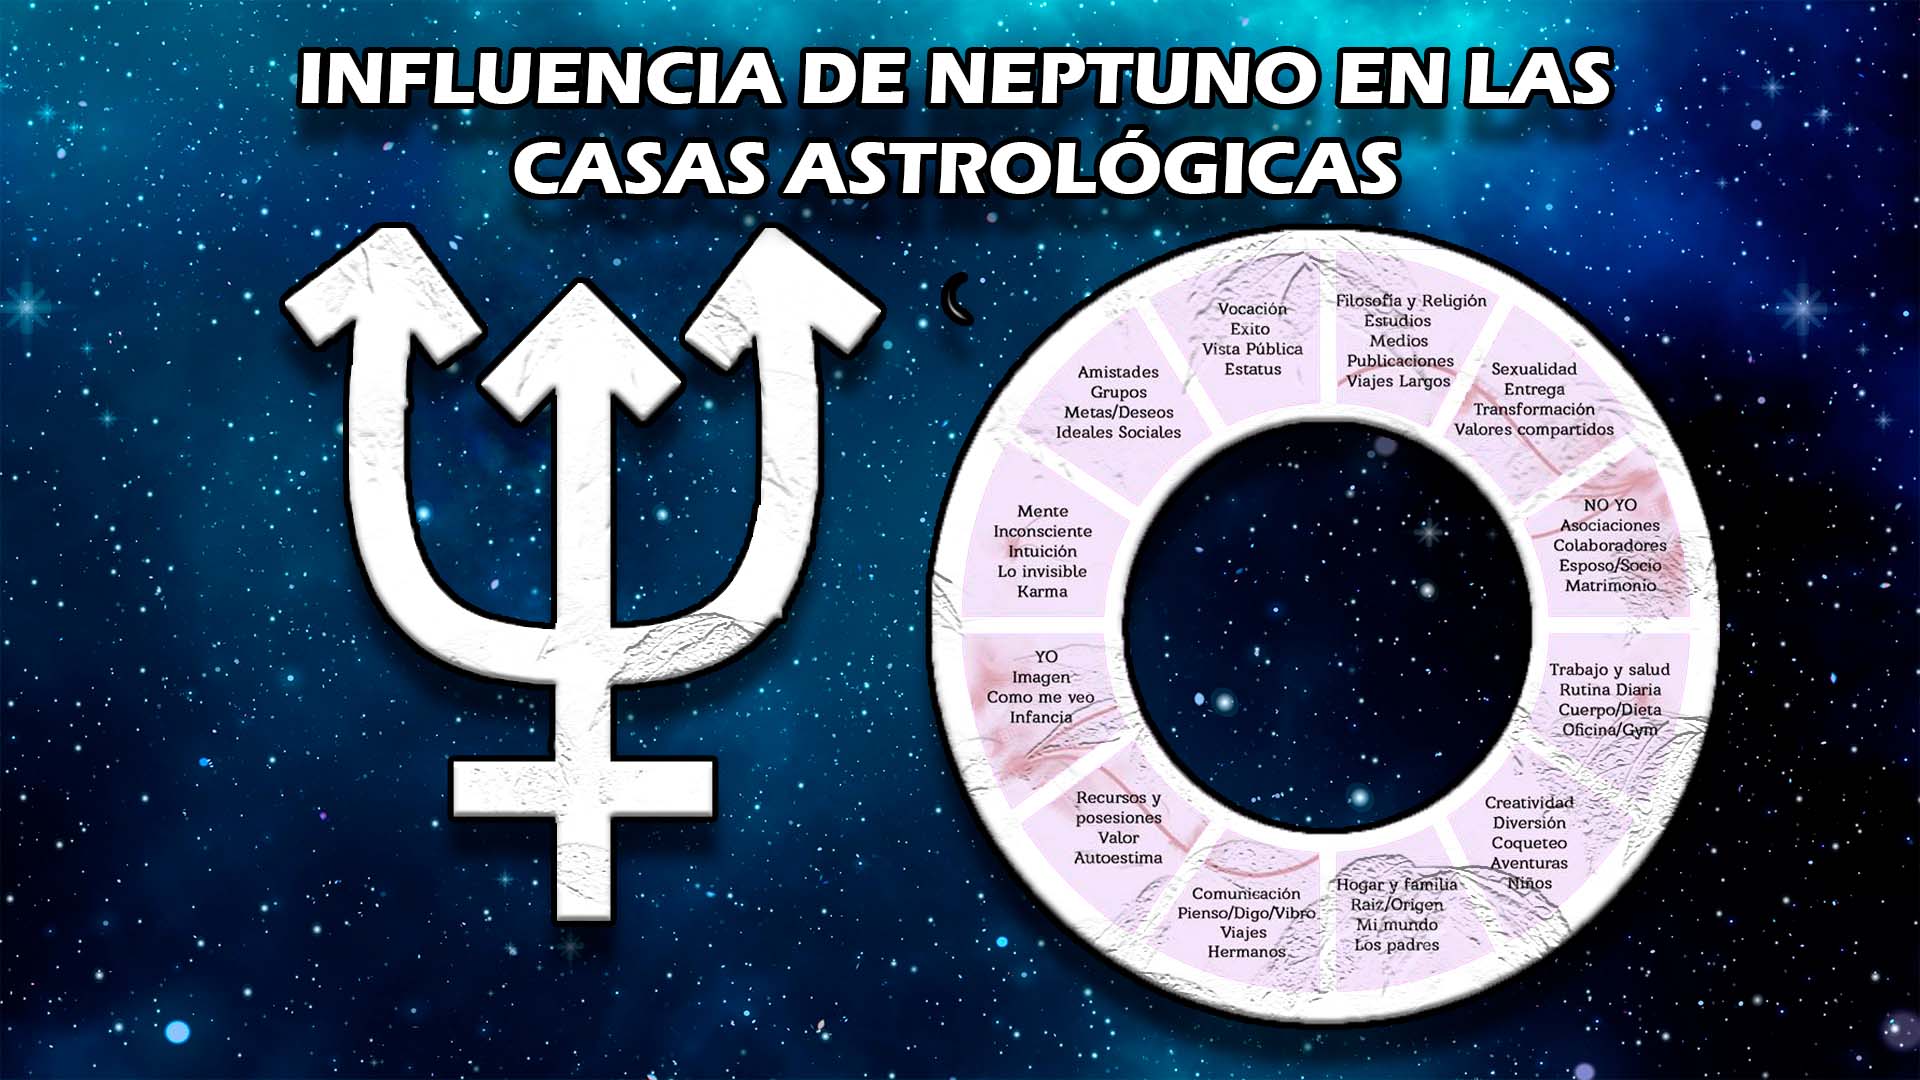 Influencia de Neptuno en las casas astrológicas